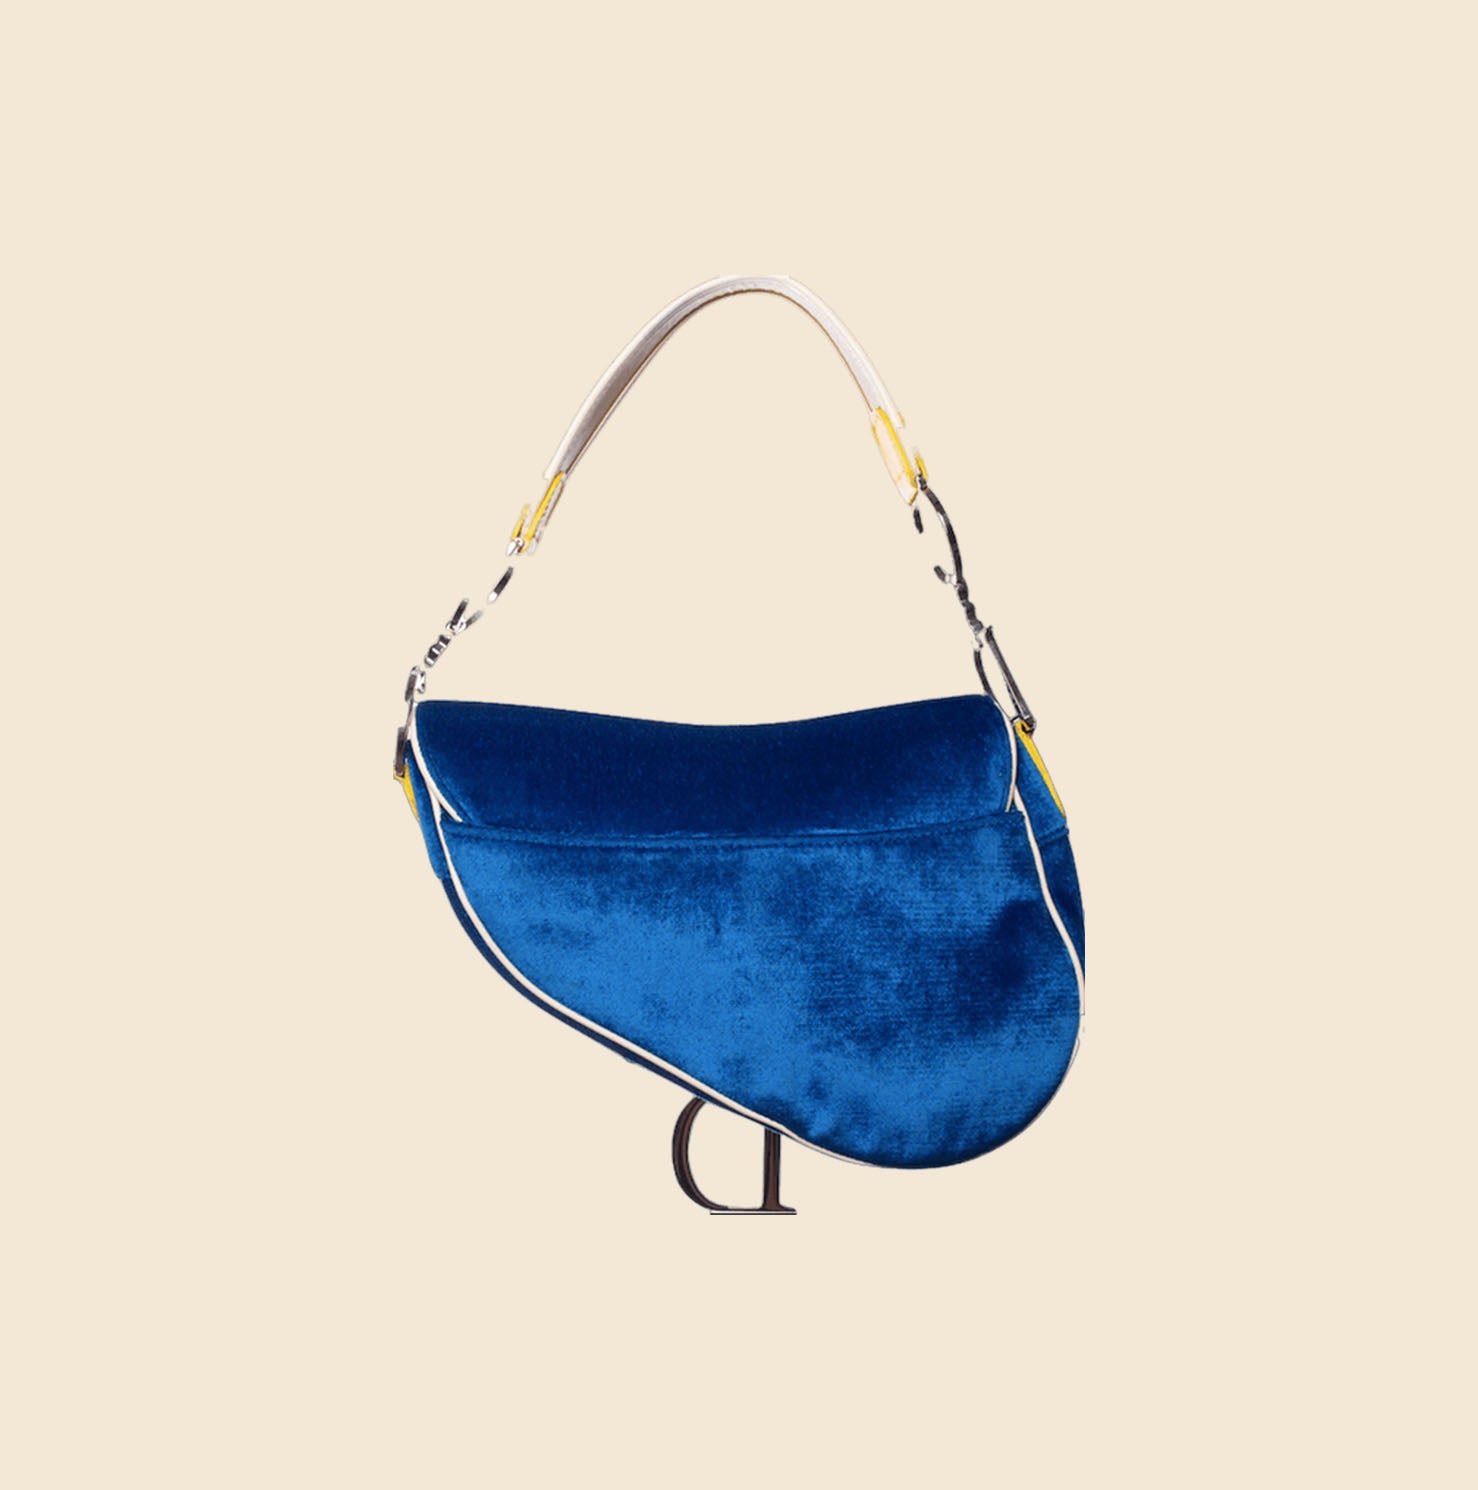 Christian Dior Vintage Limited Edition Embroidered Saddle Bag Blue